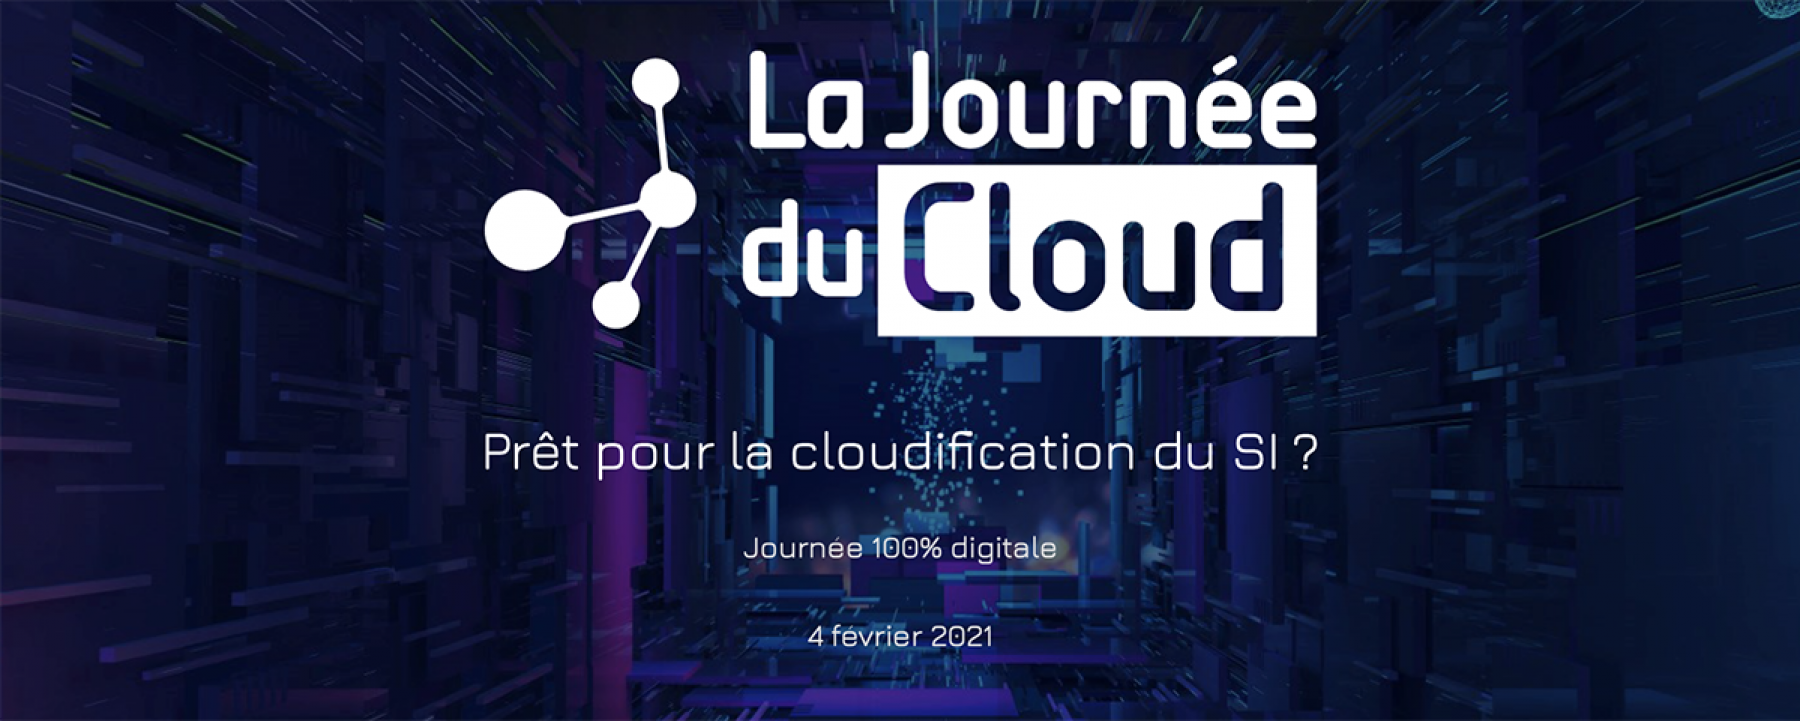 La Journée du Cloud, un événement organisé par NetMedia Group le 4 février 2021